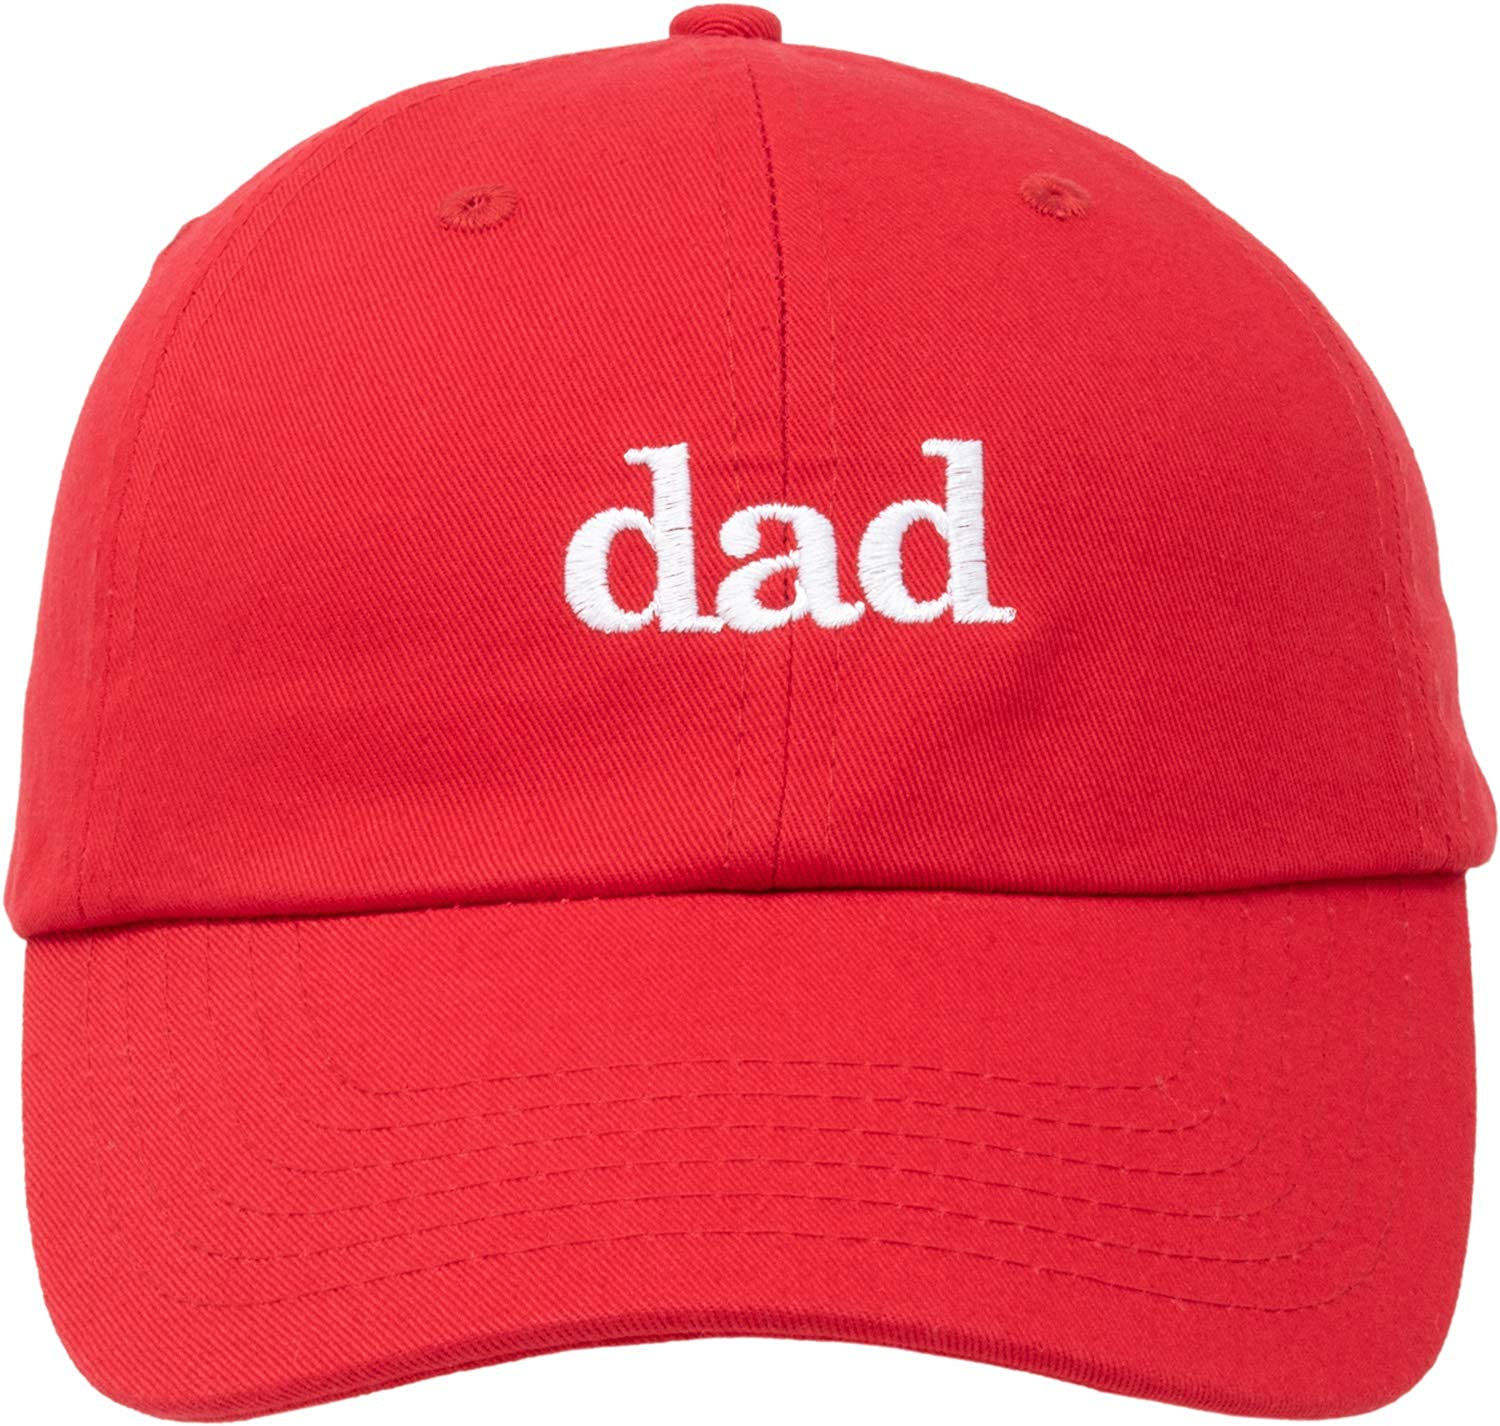 お父さんの帽子のクーポン＆割引オファー